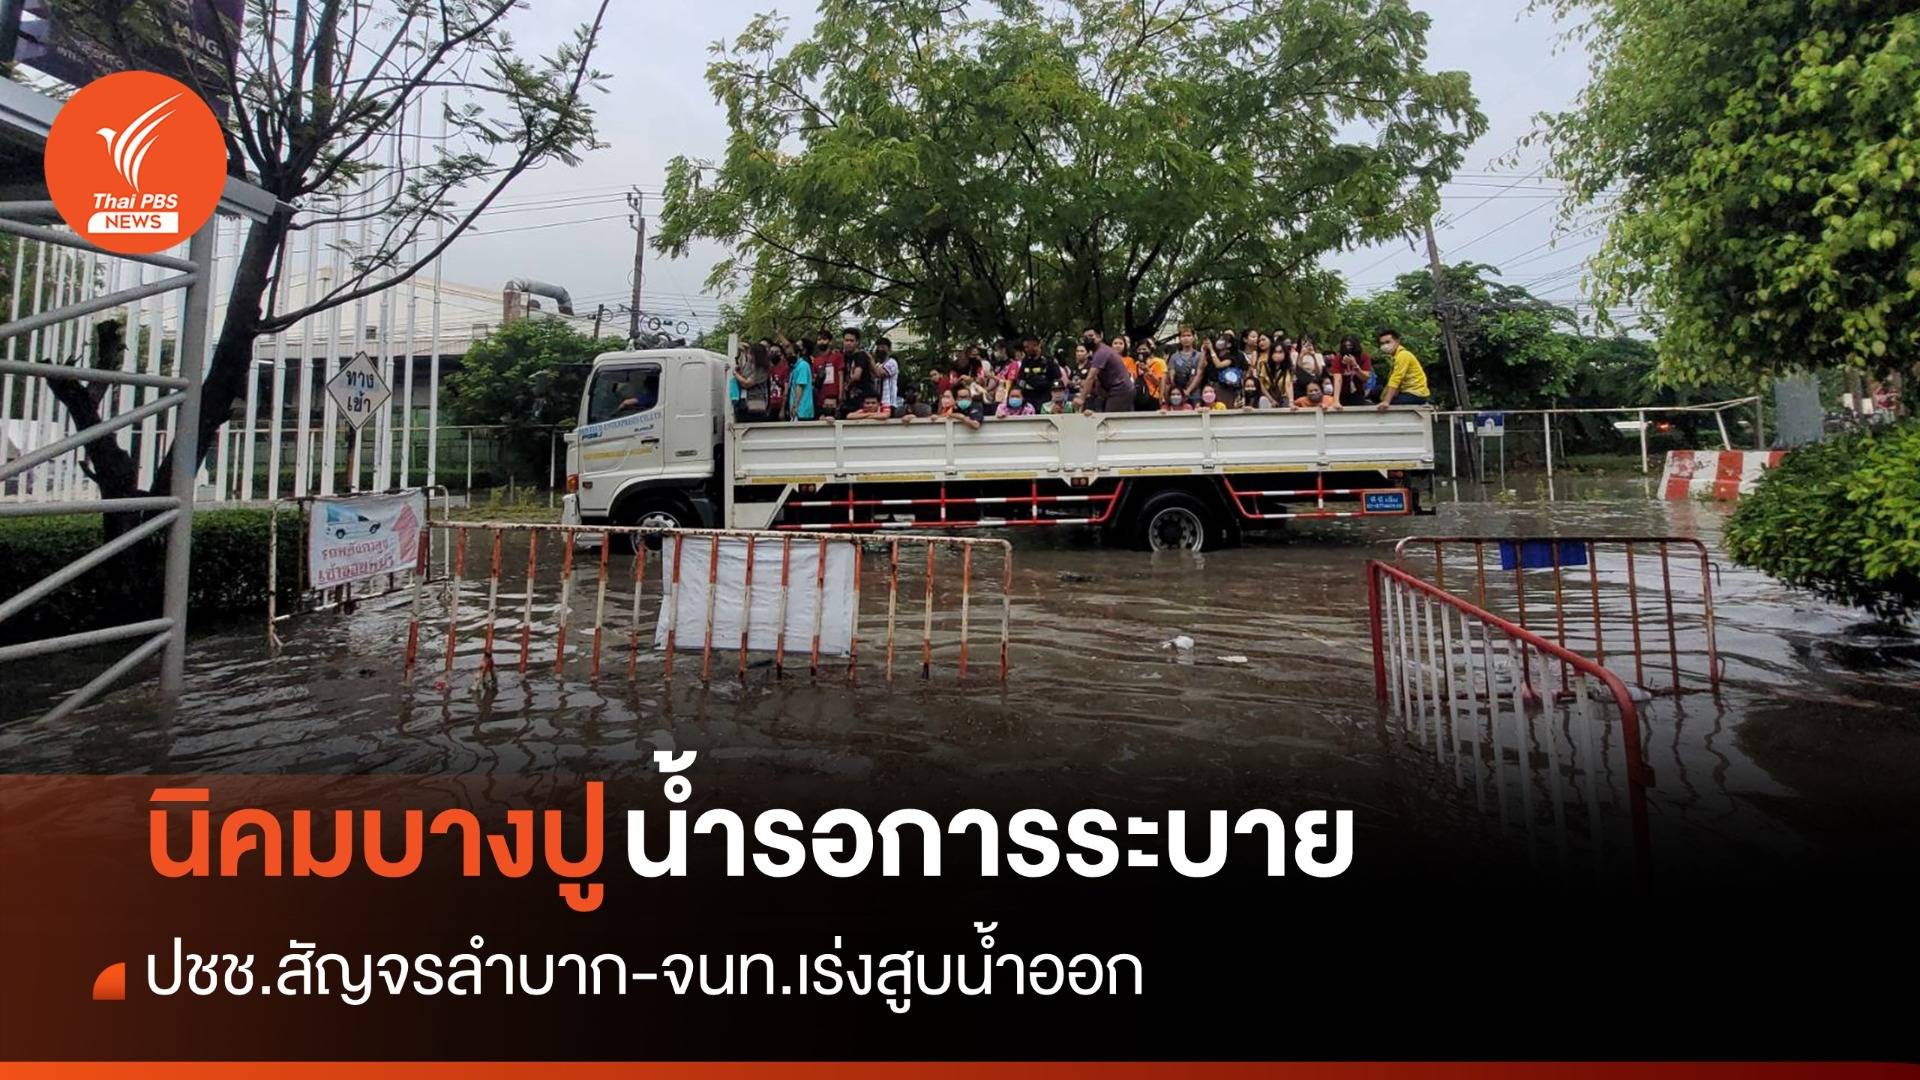 กทม.ฝนถล่มหนัก - นิคมบางปู น้ำท่วมชาวบ้านใช้เรือเดินทาง